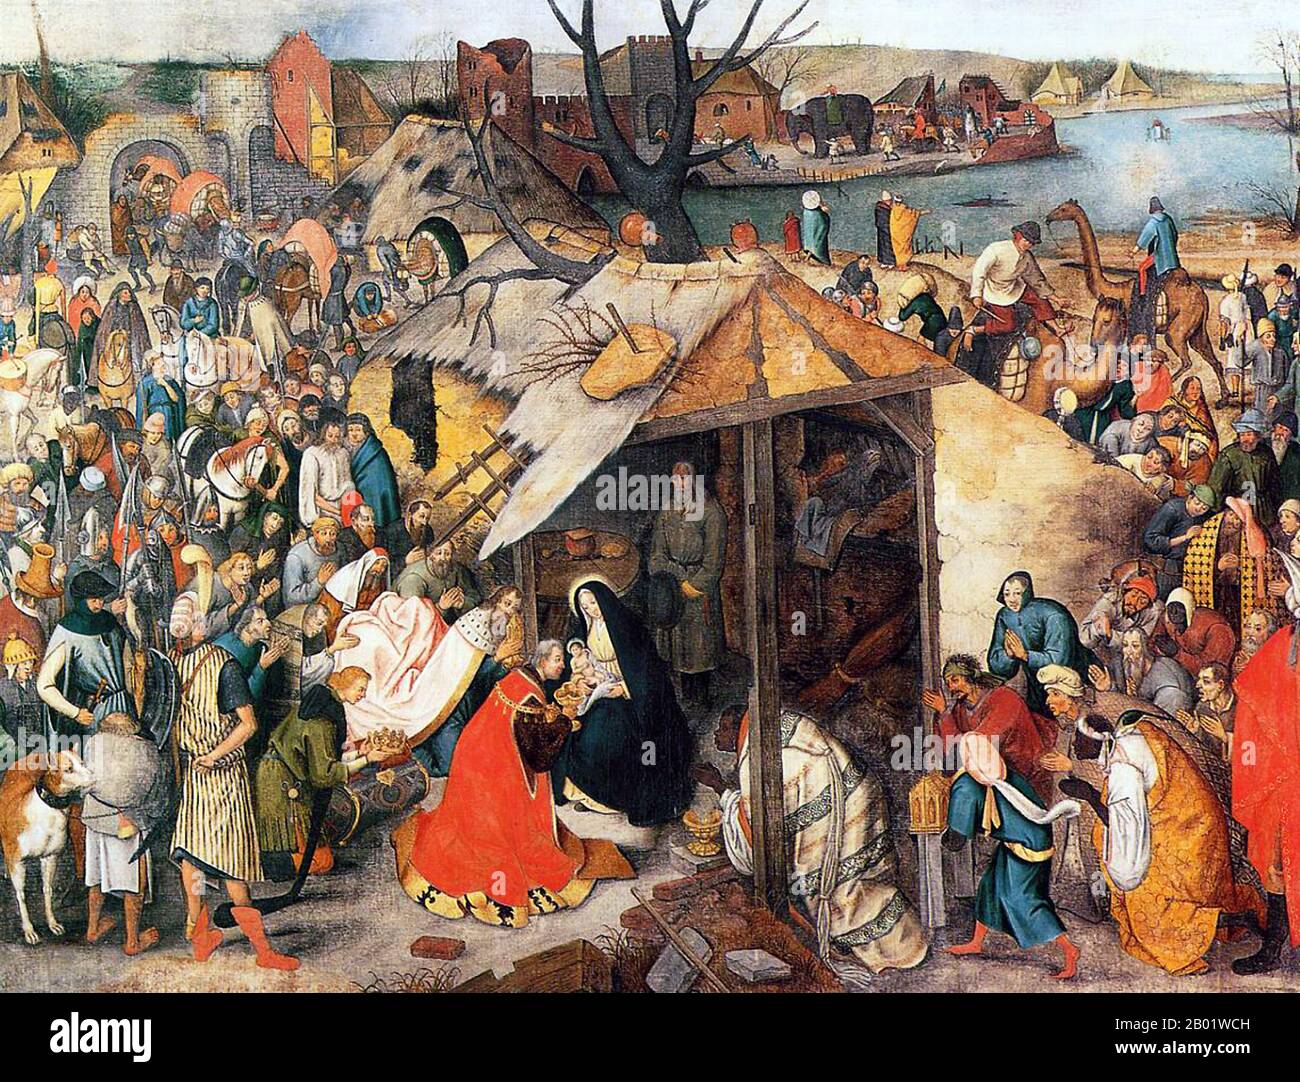 Olanda/Paesi Bassi: "L'Adorazione dei Magi". Tempera su tela dipinto di Pieter Bruegel il Vecchio (1526 - 9 settembre 1569), c. 1556. Pieter Bruegel (Brueghel) il Vecchio era un pittore e incisore fiammingo del Rinascimento noto per i suoi paesaggi e le scene contadine. A volte viene chiamato "contadino Bruegel" per distinguerlo dagli altri membri della dinastia Brueghel, ma è anche quello generalmente inteso quando il contesto non chiarisce a quale Brueghel si riferisca. Dal 1559 lasciò cadere la "h" dal suo nome e firmò i suoi dipinti come Bruegel. Foto Stock